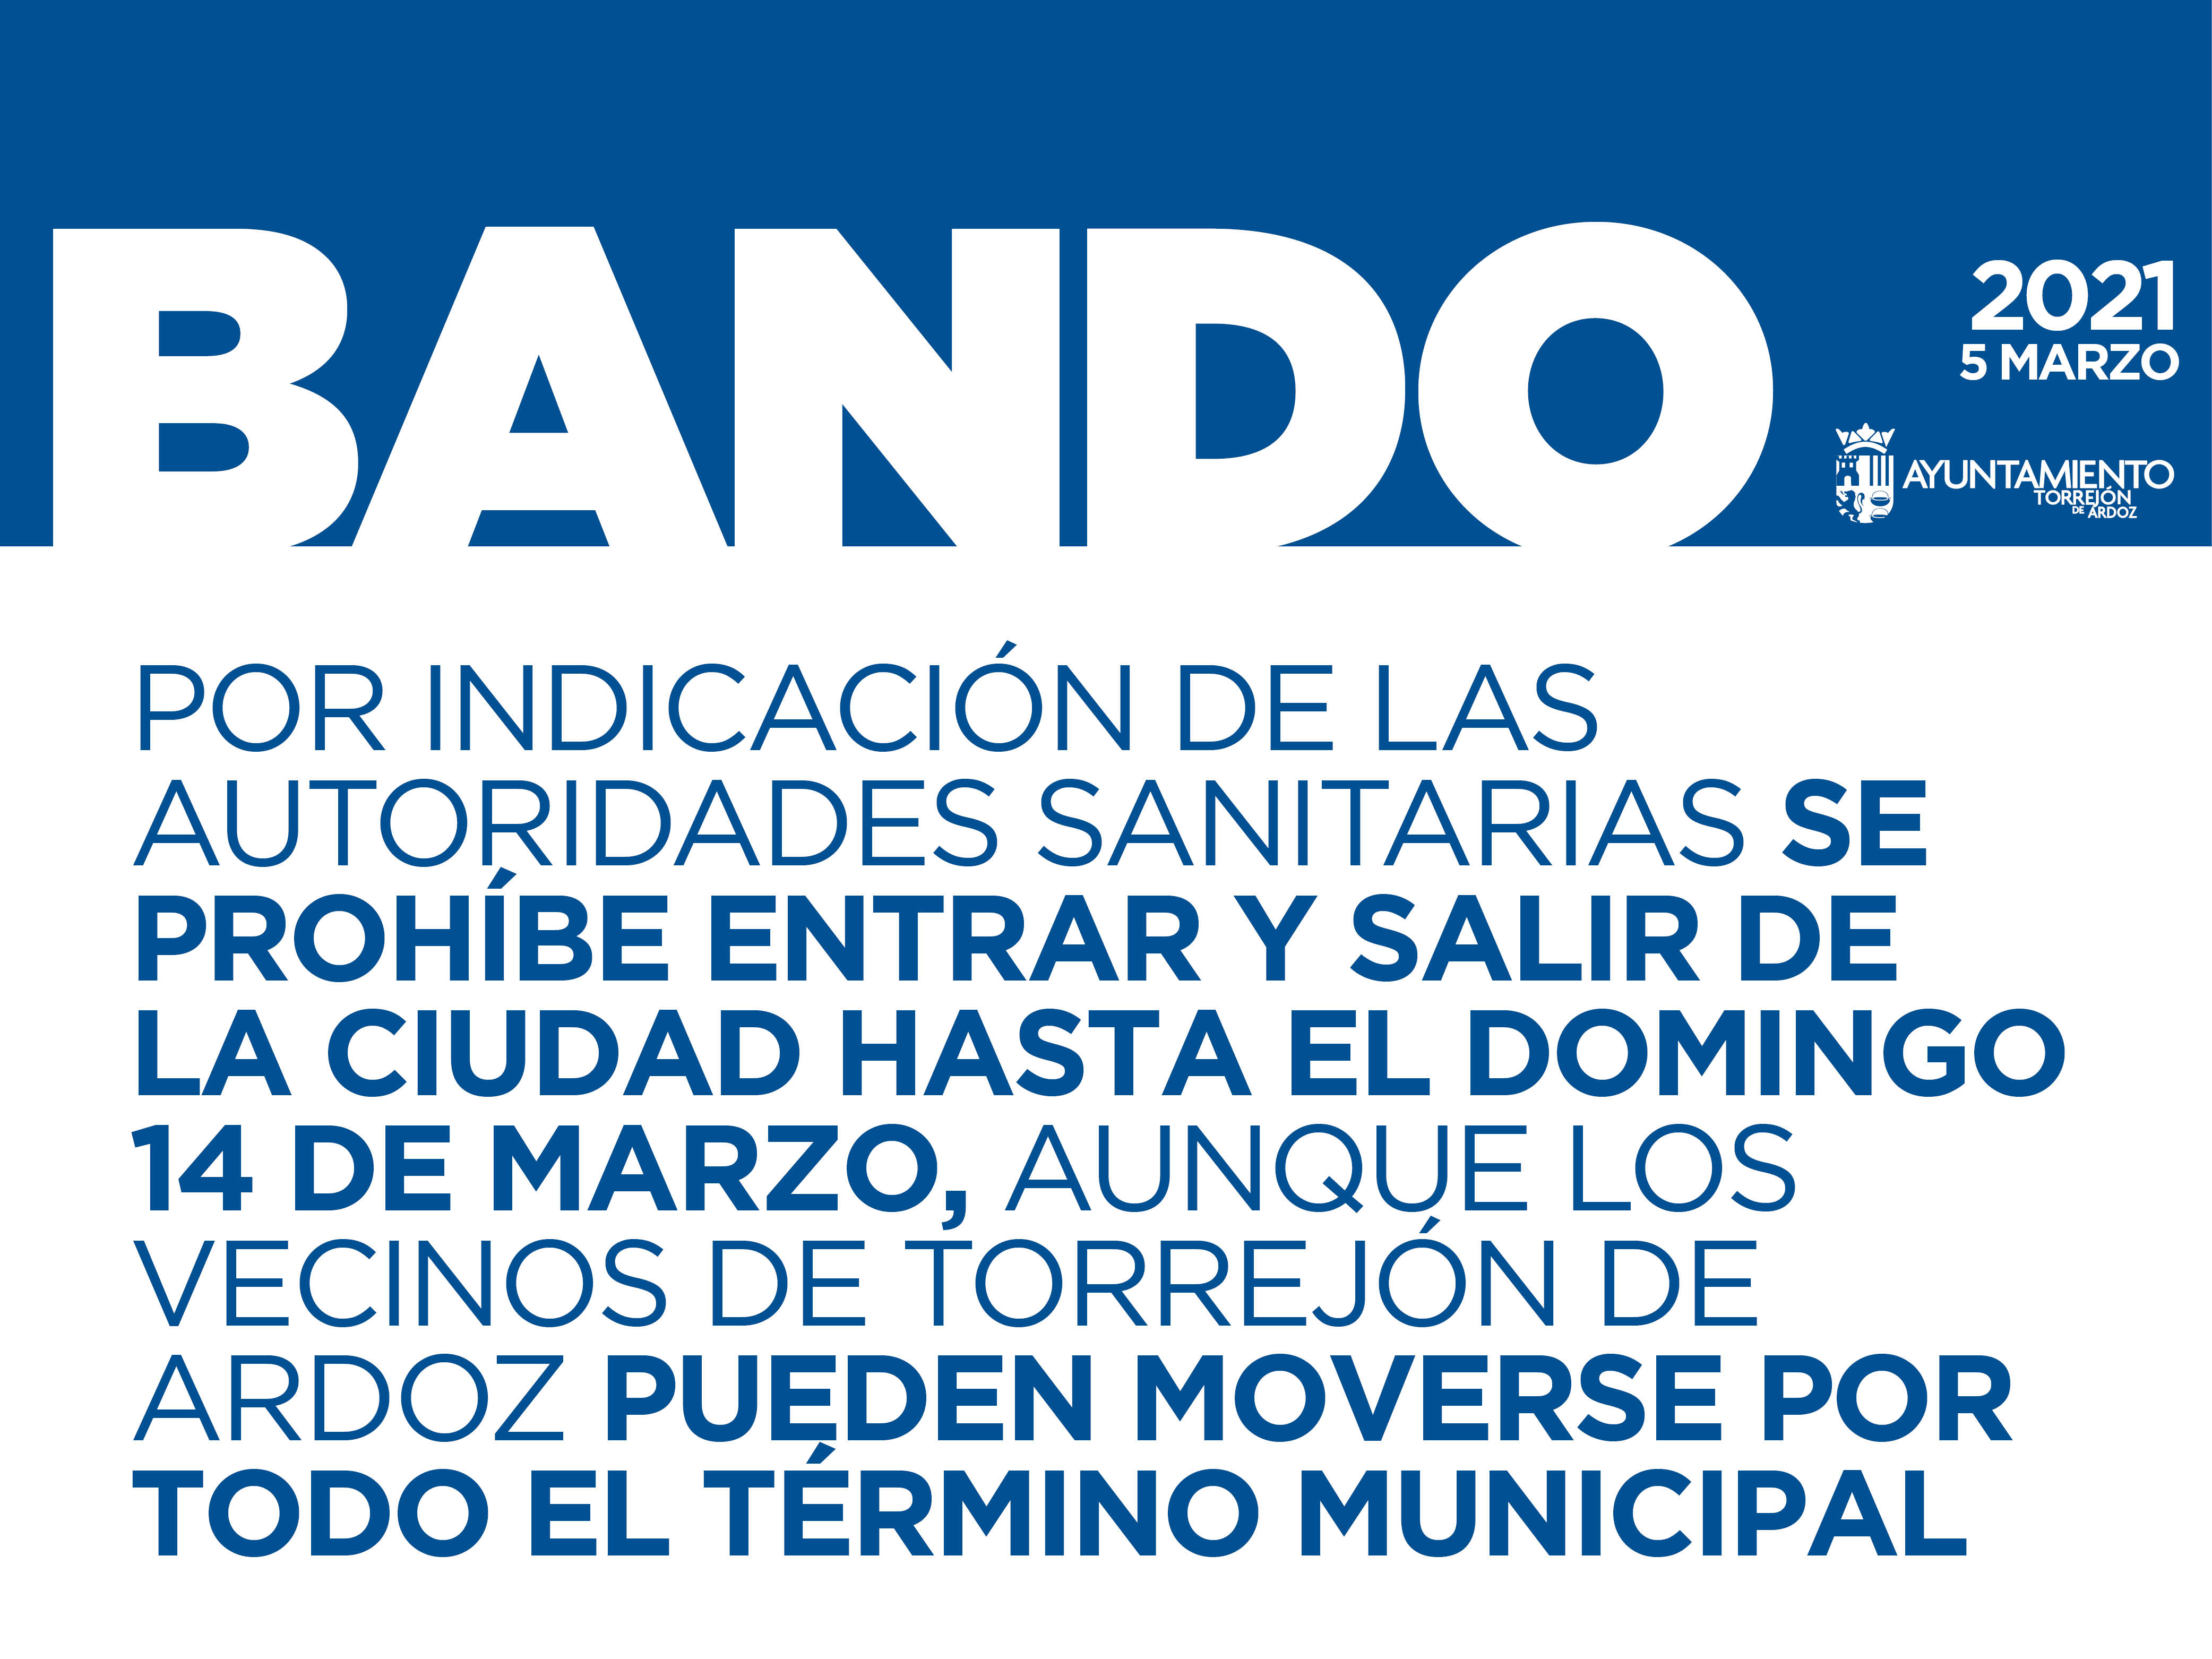 AVISO IMPORTANTE: Torrejón de Ardoz estará cerrado en todo su perímetro hasta el domingo 14 de marzo por indicación de las autoridades sanitarias